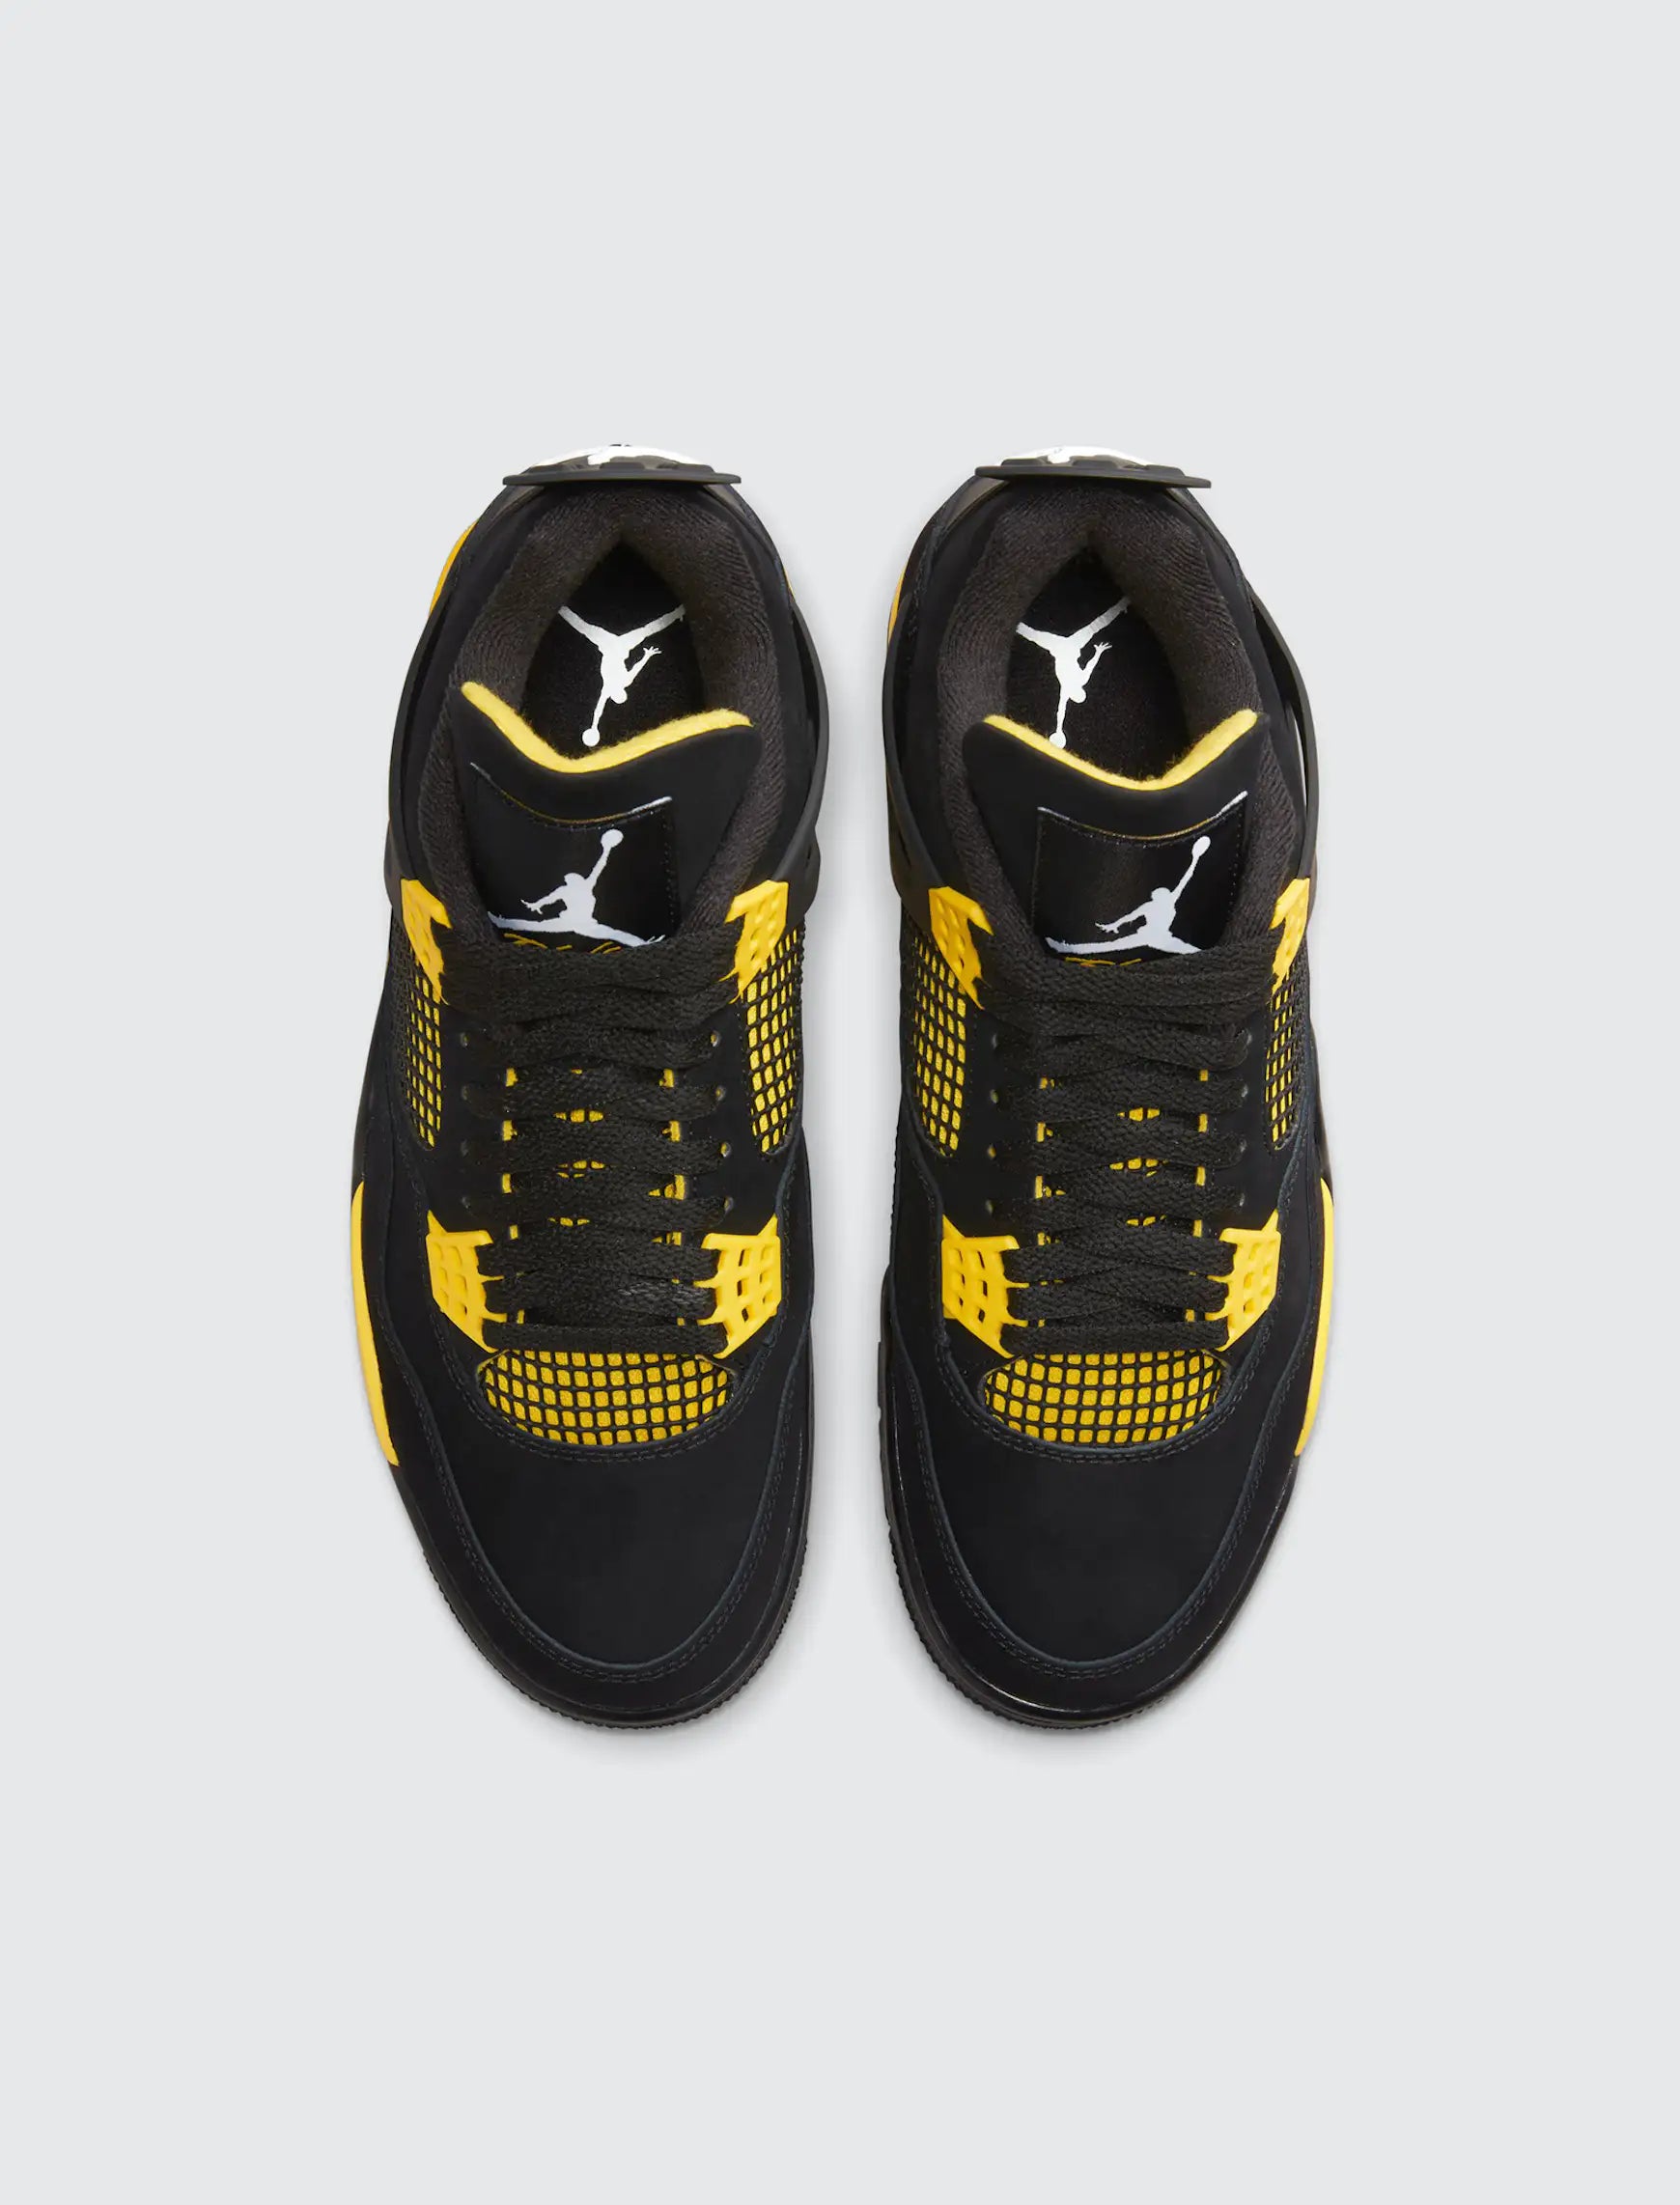 The Air Jordan 4 “Thunder”